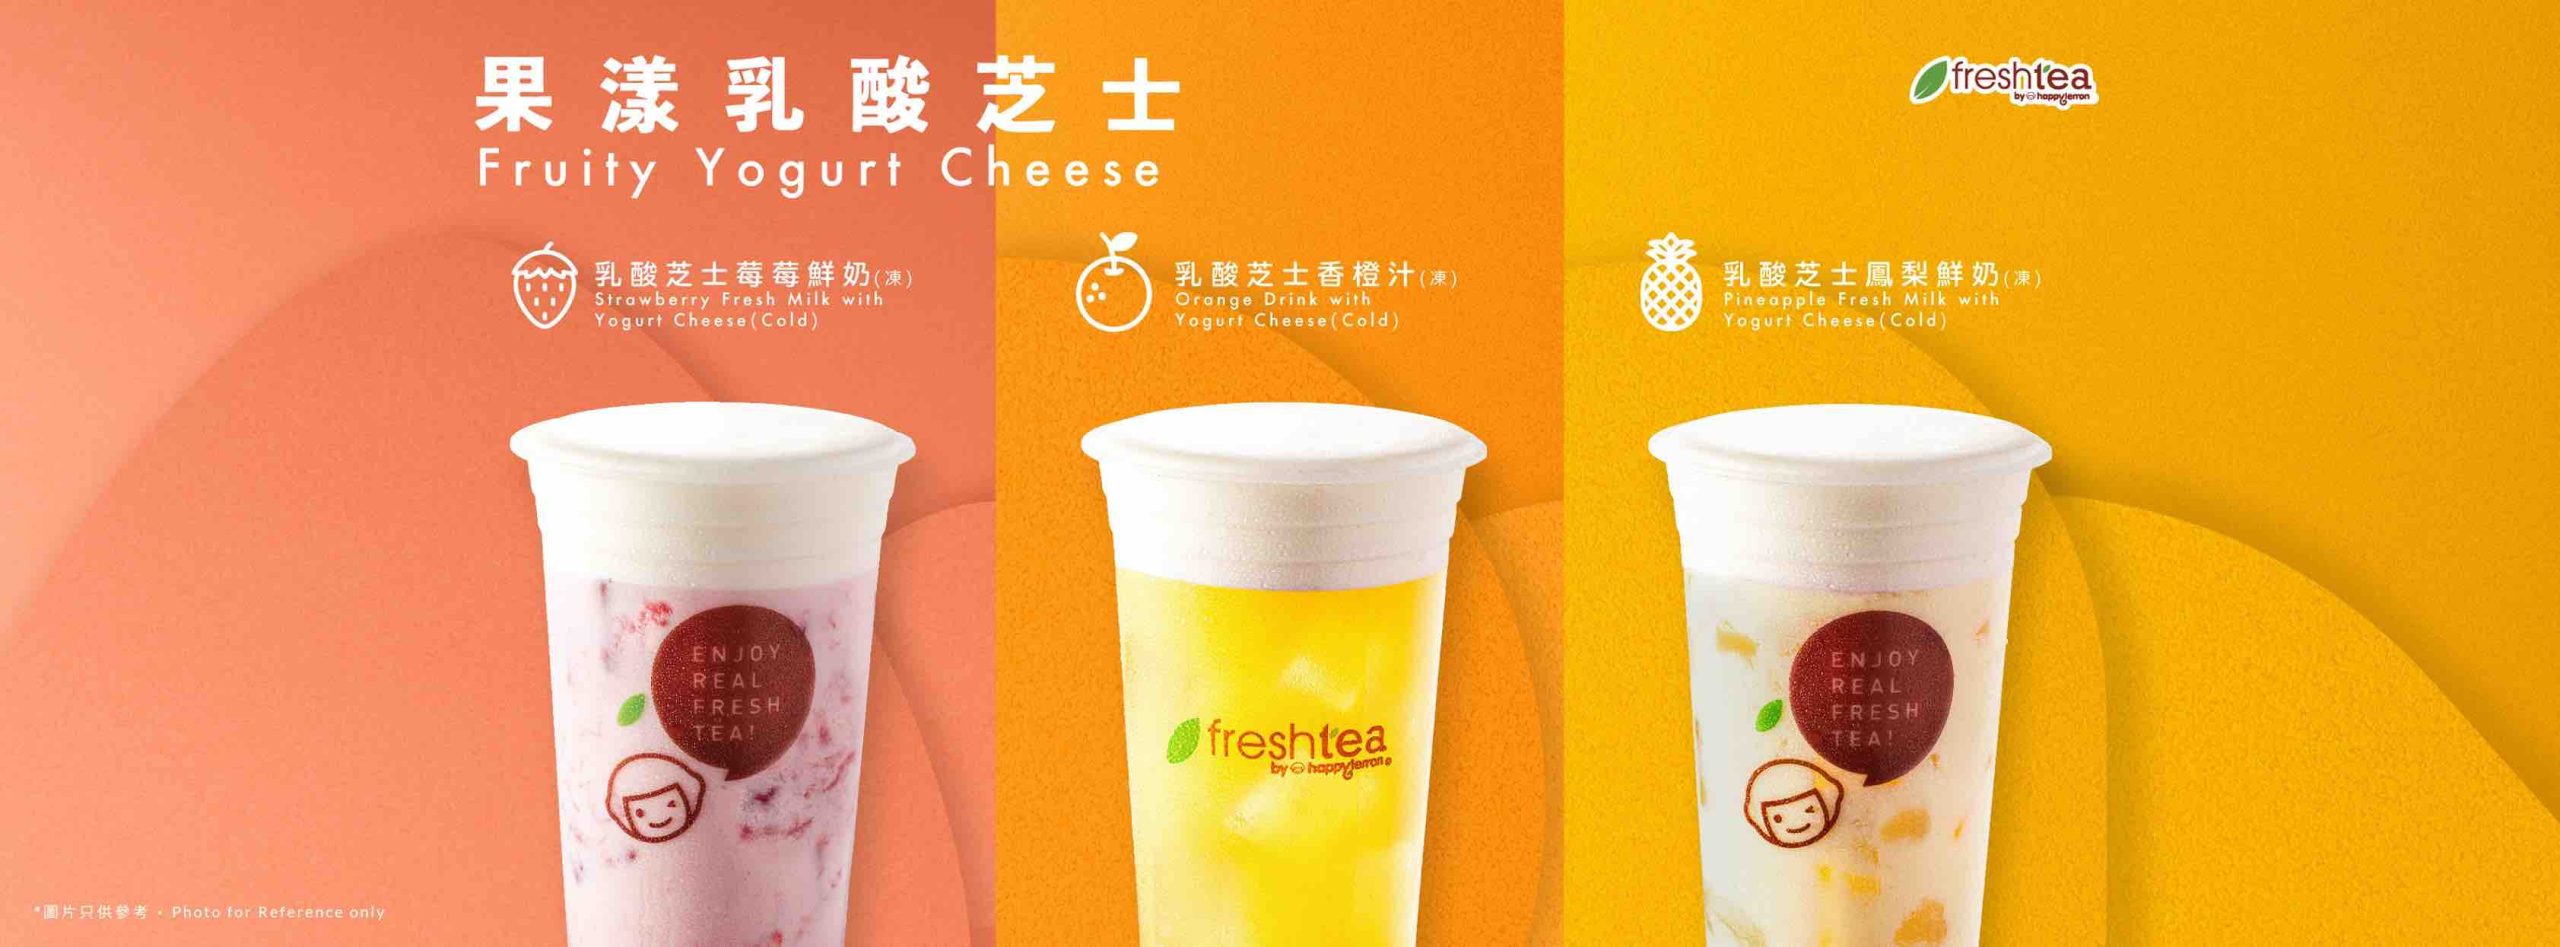 快樂檸檬 happylemon的特許經營香港區加盟店項目5